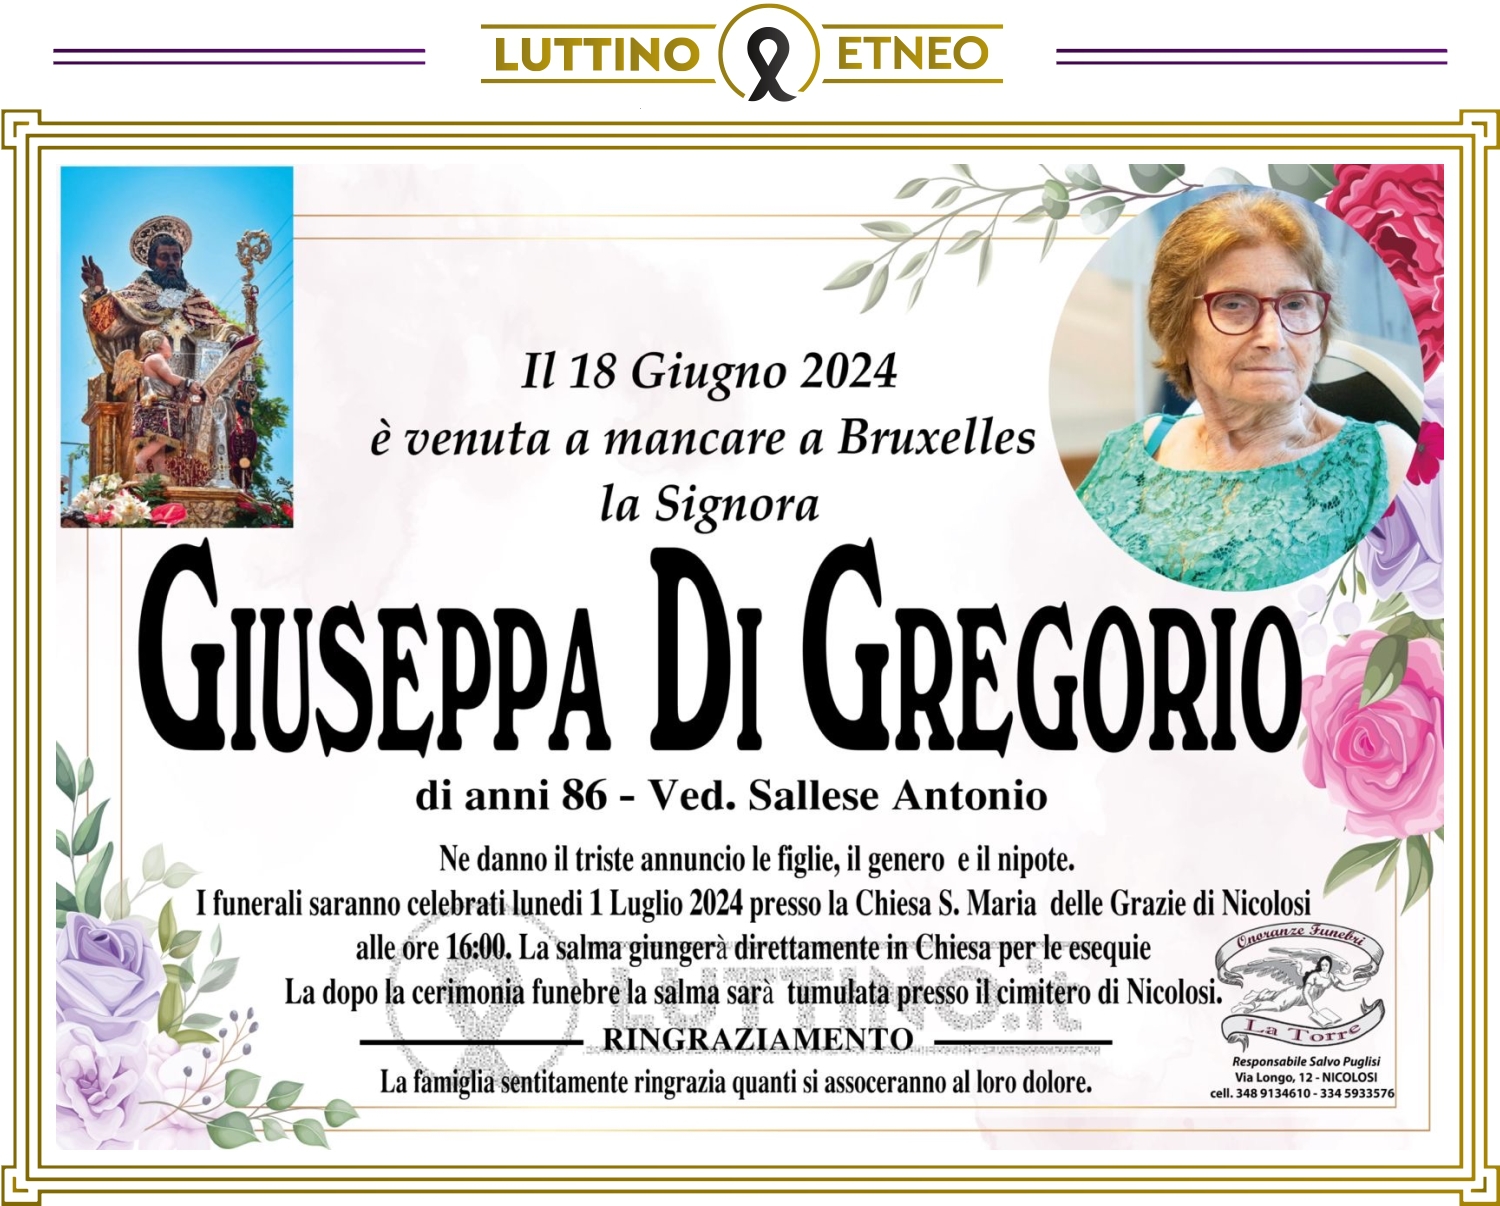 Giuseppa Di Gregorio